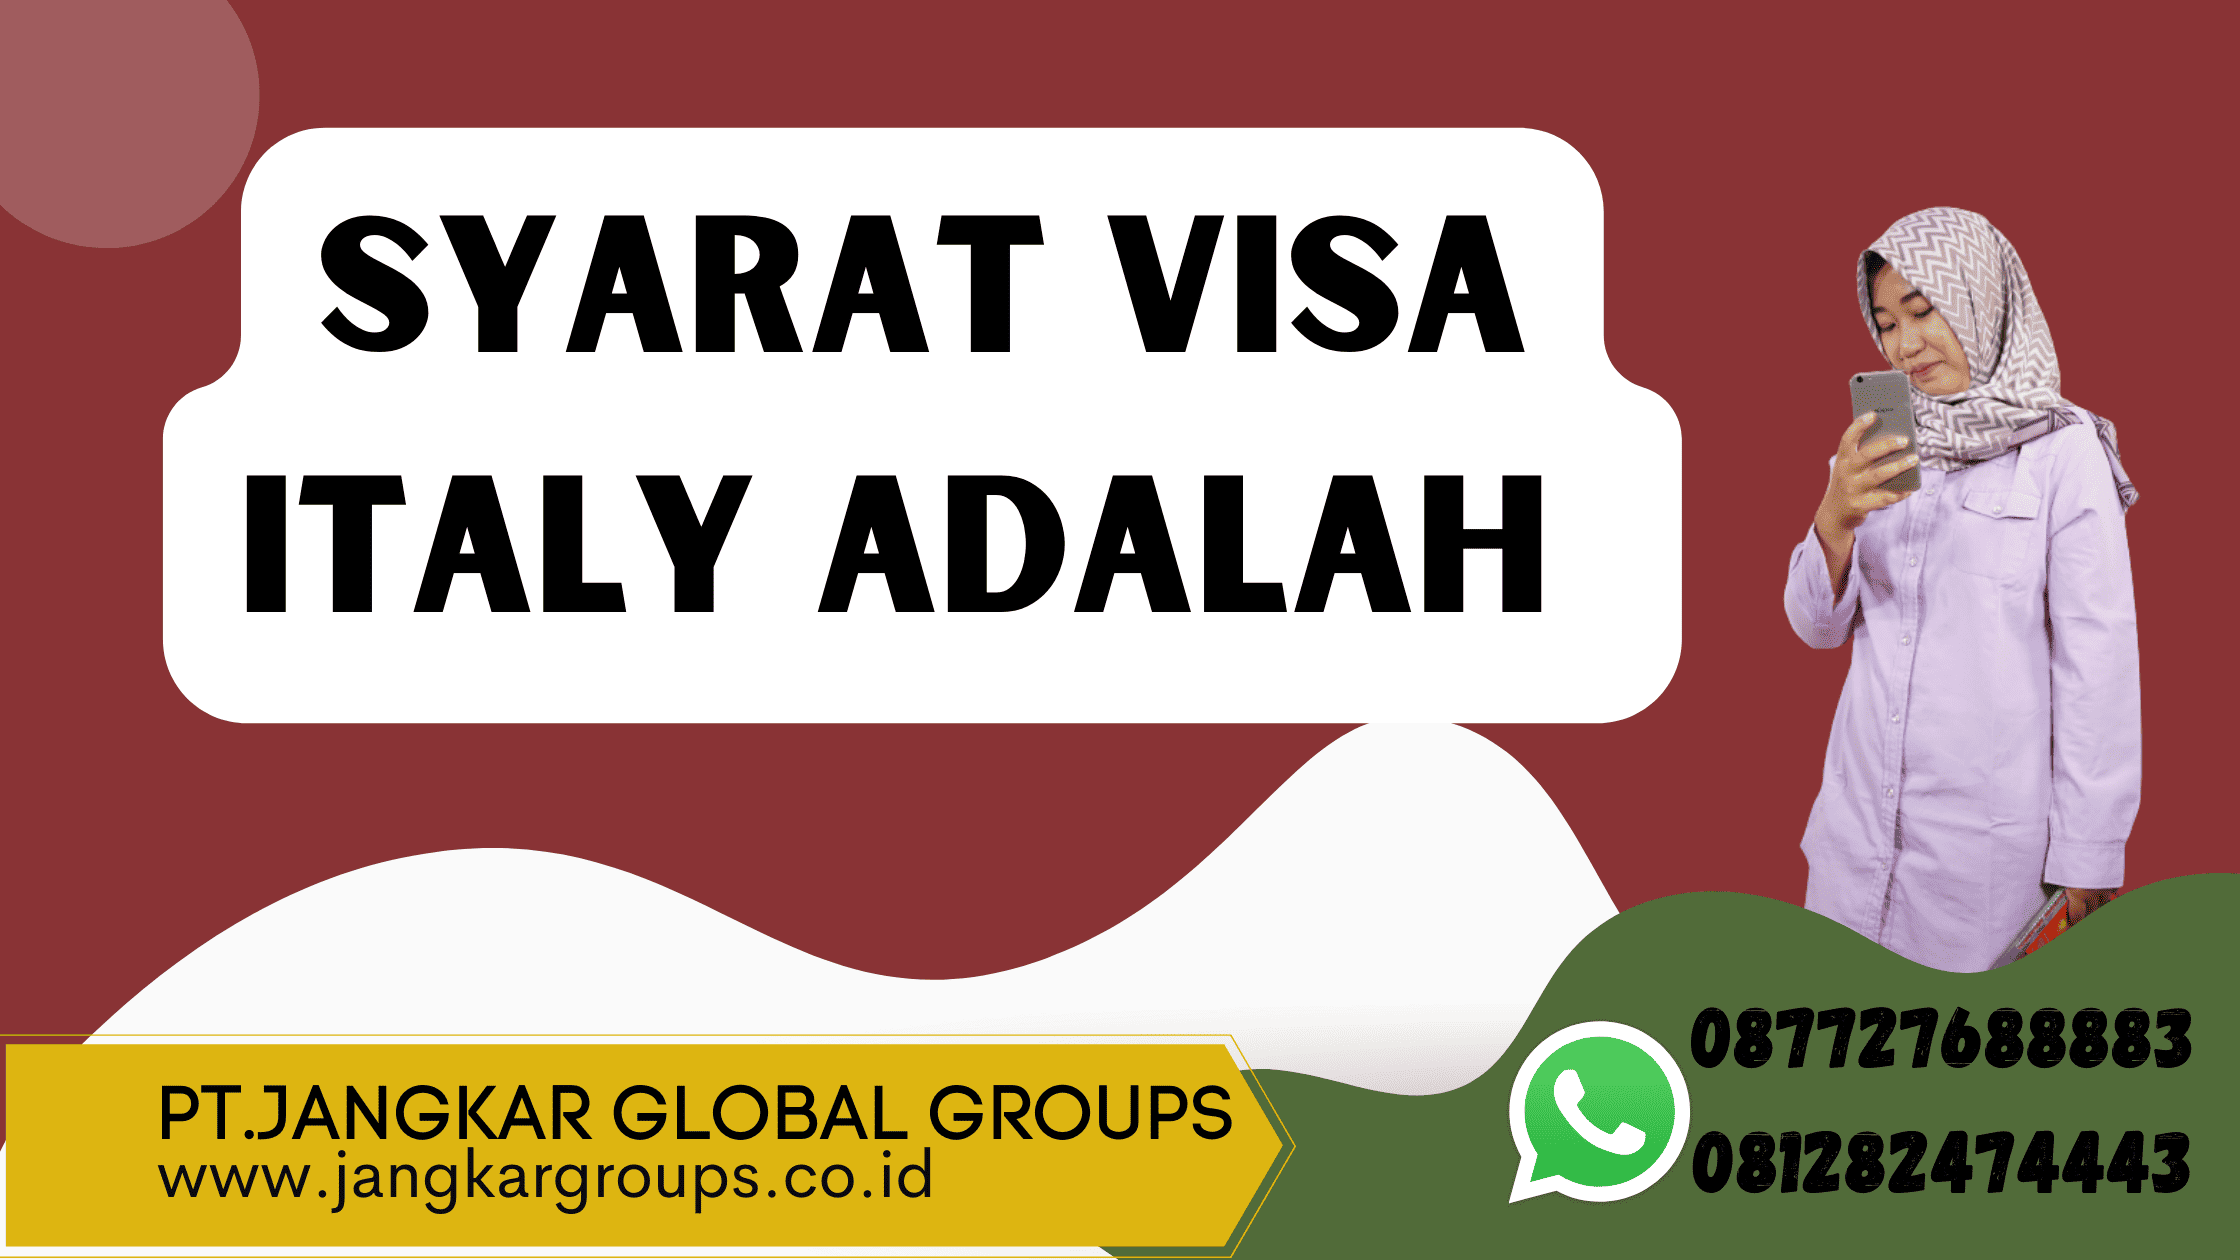 Syarat Visa Italy Adalah 